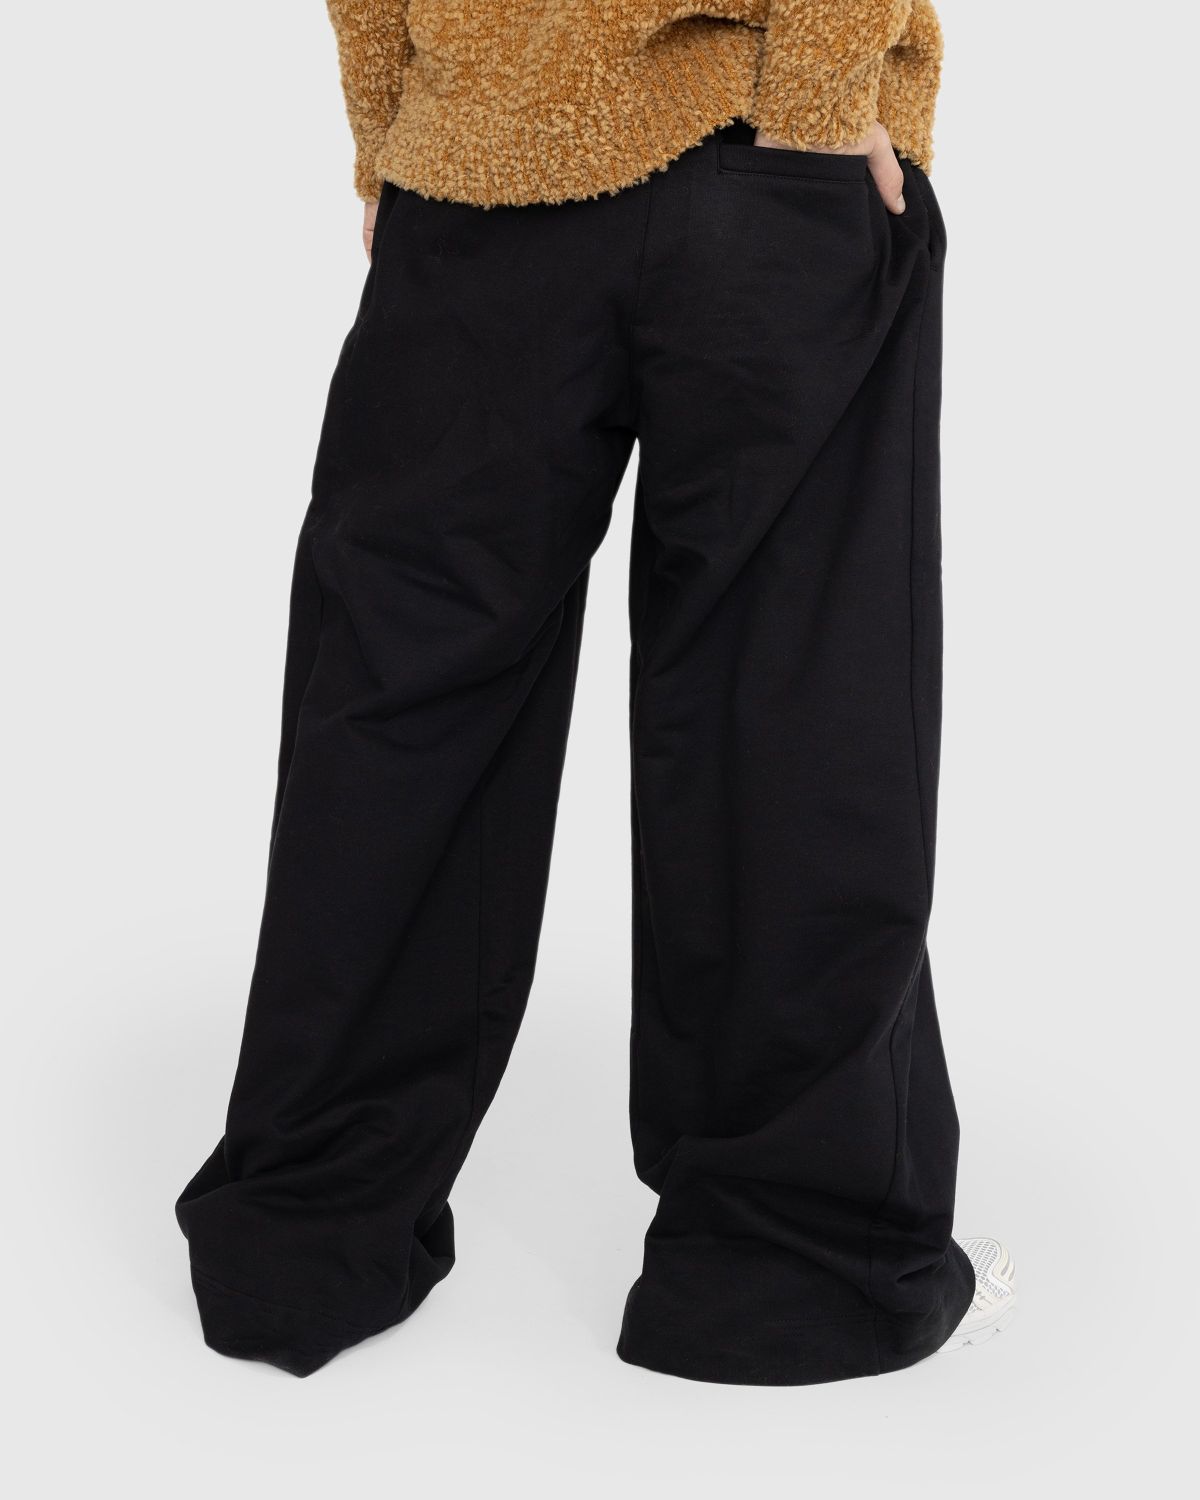 Dries van Noten – Hama Cotton Jersey Pants Black - Tops - Black - Image 3